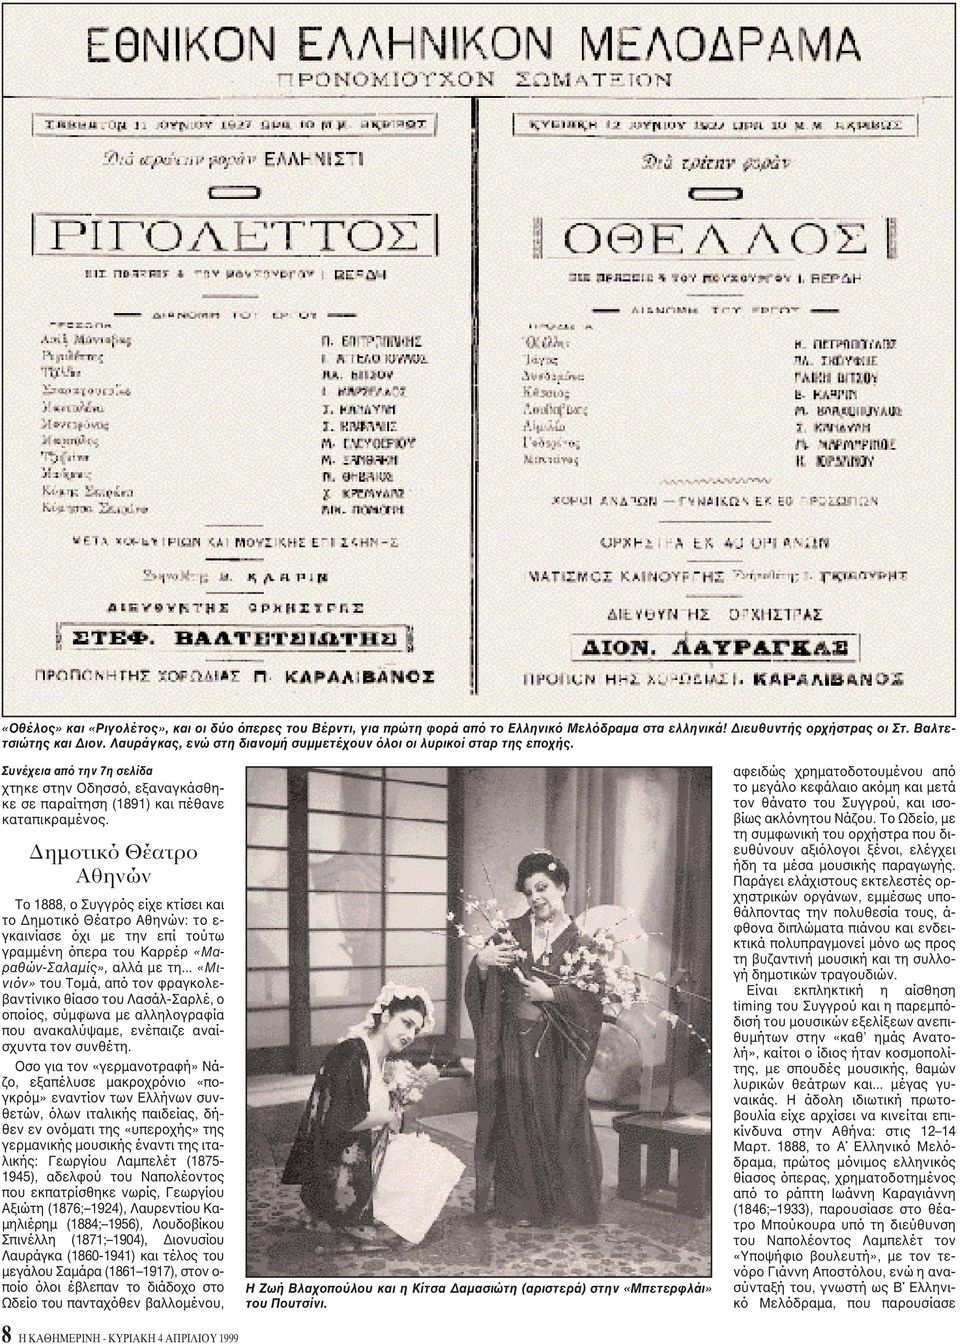 Δημοτικό Θέατρο Aθηνών Tο 1888, ο Συγγρός είχε κτίσει και το Δημοτικό Θέατρο Aθηνών: το ε- γκαινίασε όχι με την επί τούτω γραμμένη όπερα του Kαρρέρ «Mαραθών-Σαλαμίς», αλλά με τη.